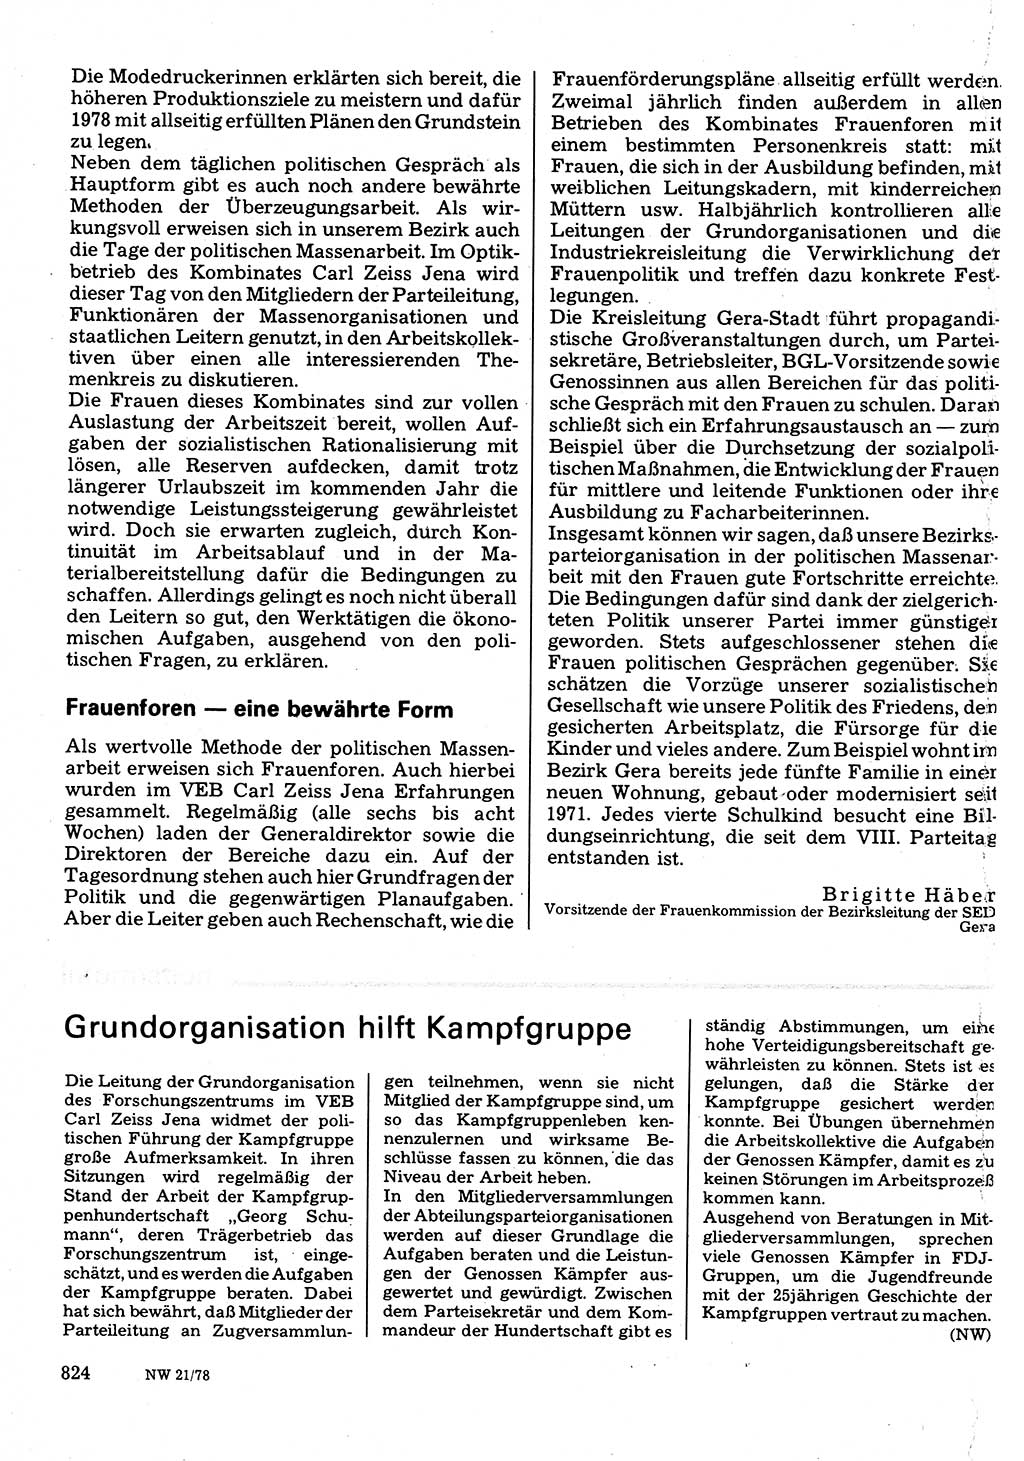 Neuer Weg (NW), Organ des Zentralkomitees (ZK) der SED (Sozialistische Einheitspartei Deutschlands) für Fragen des Parteilebens, 33. Jahrgang [Deutsche Demokratische Republik (DDR)] 1978, Seite 824 (NW ZK SED DDR 1978, S. 824)